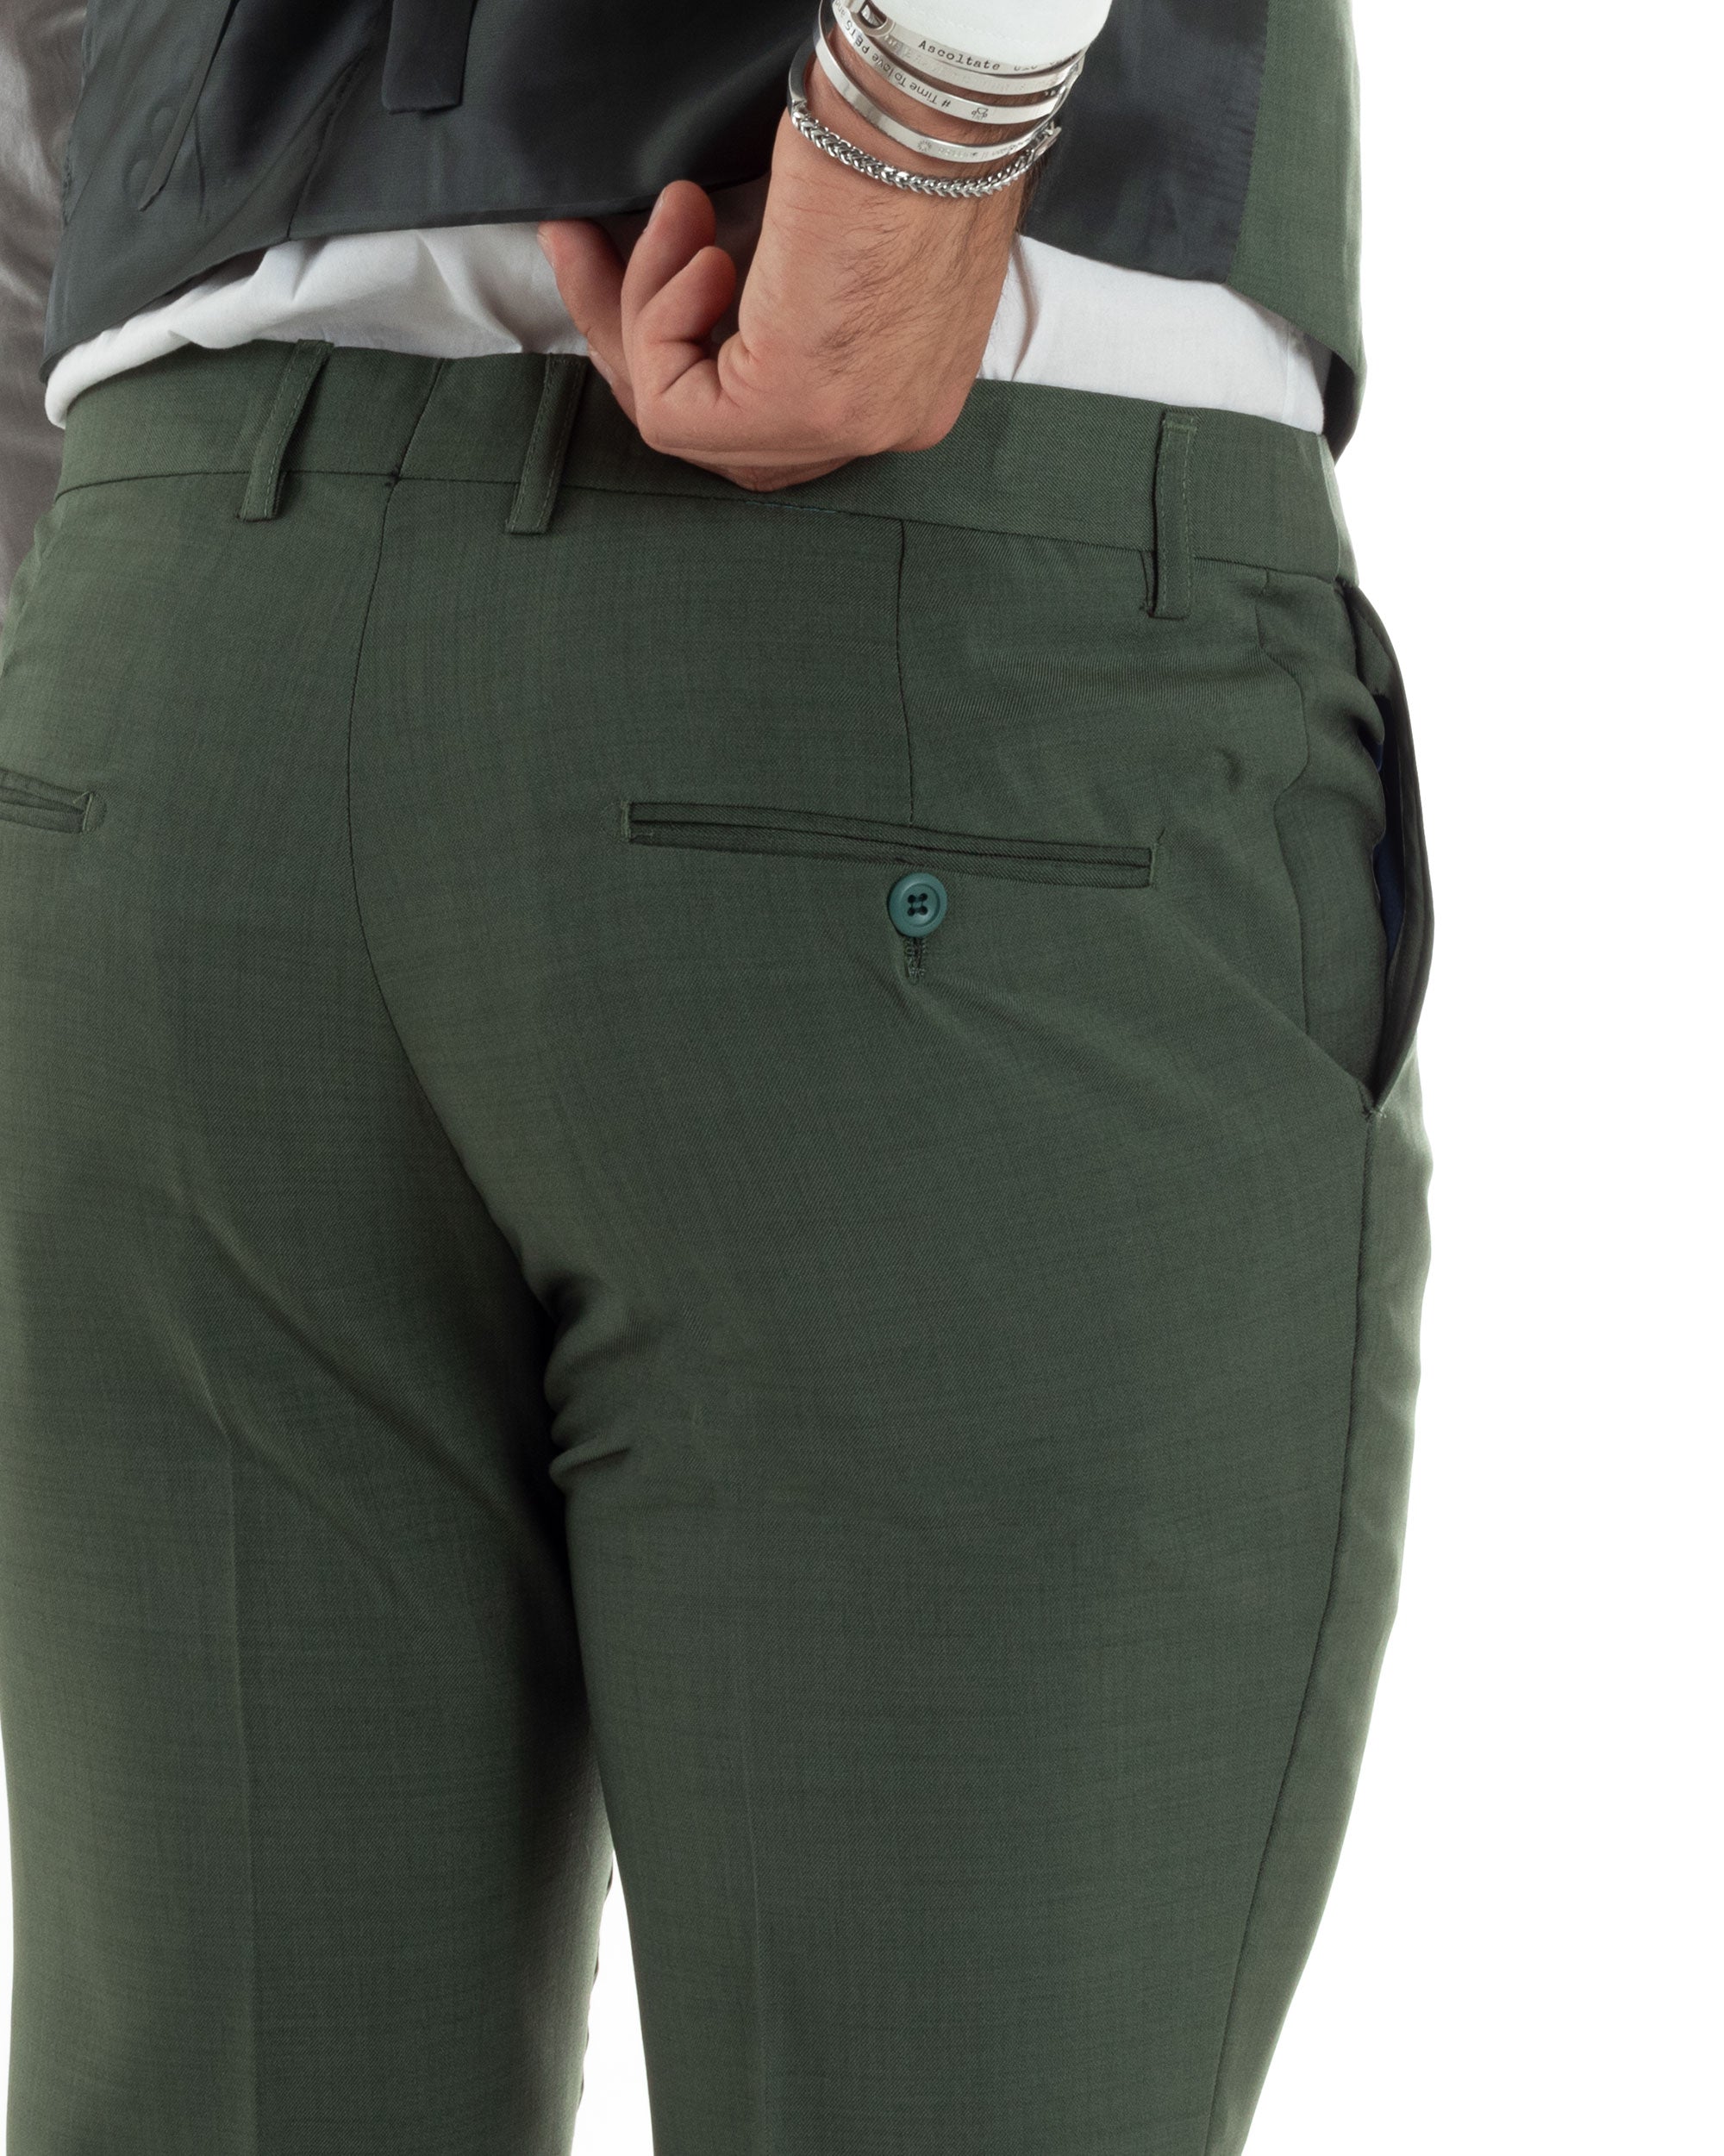 Abito Uomo Monopetto Vestito 3 Pezzi Completo Giacca Pantaloni Panciotto Elegante Sartoriale Verde Melangiato GIOSAL-AE1061A